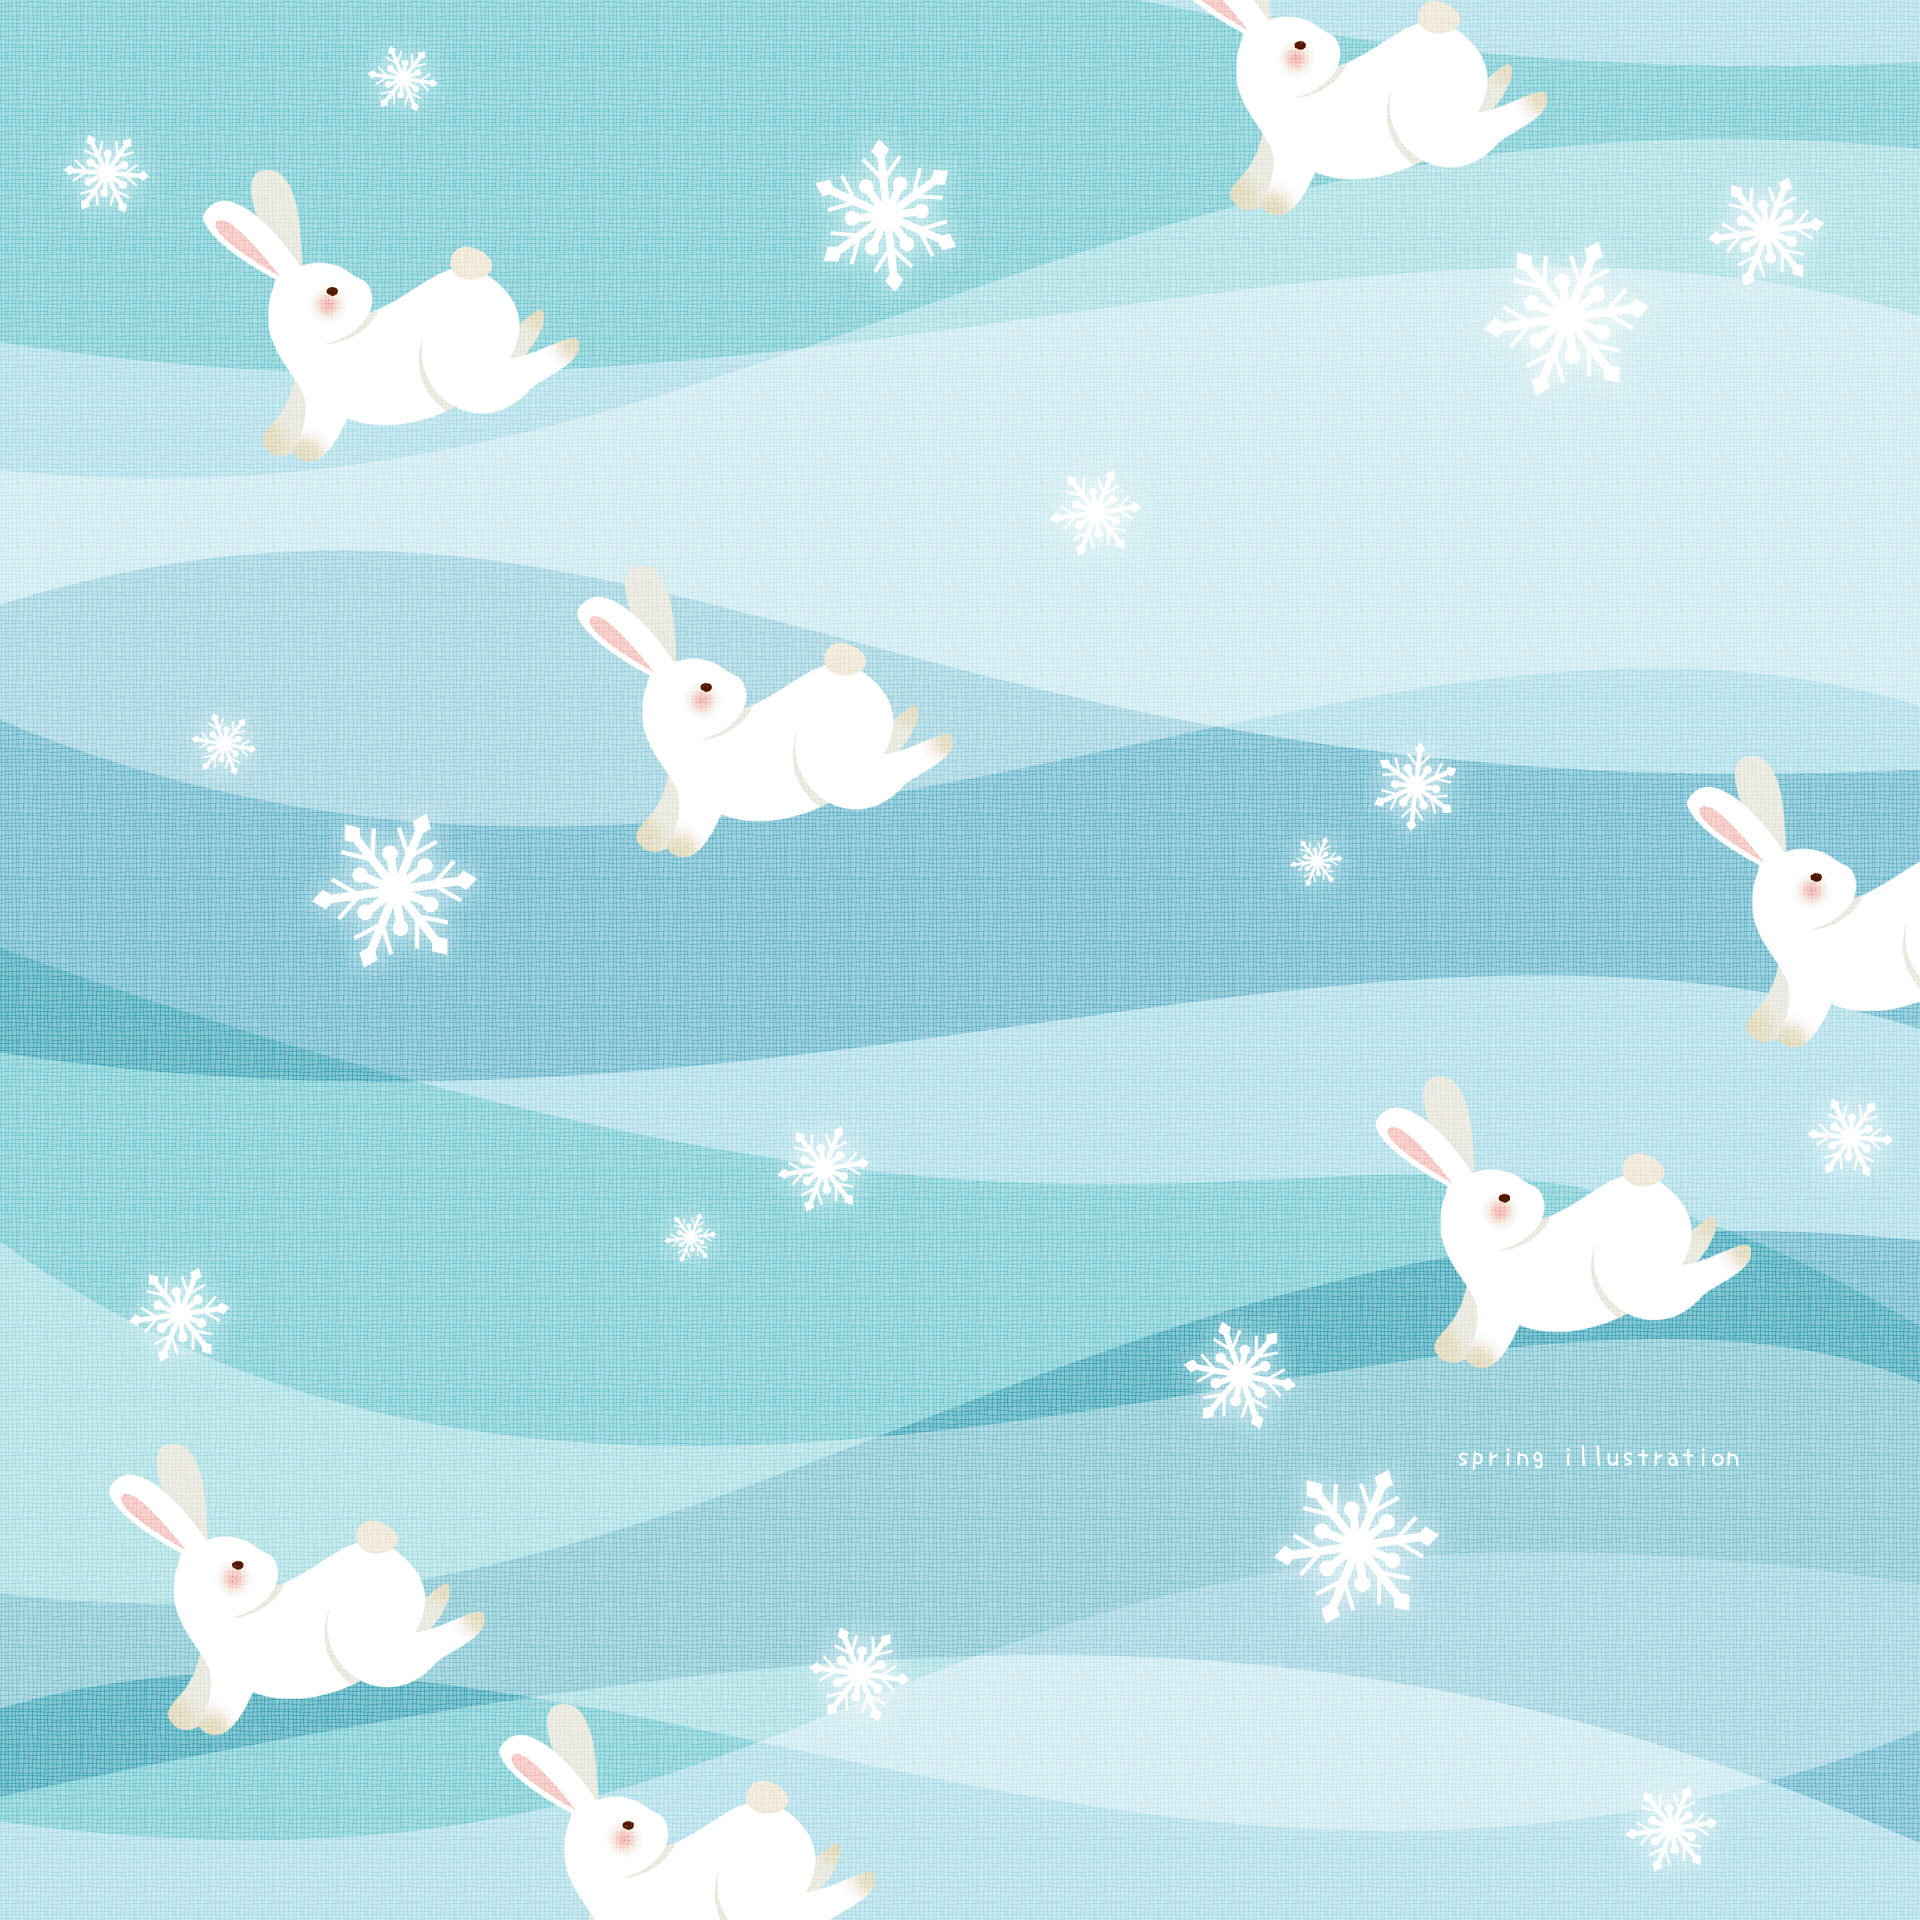 【雪うさぎ】動物のイラストましかく壁紙・背景